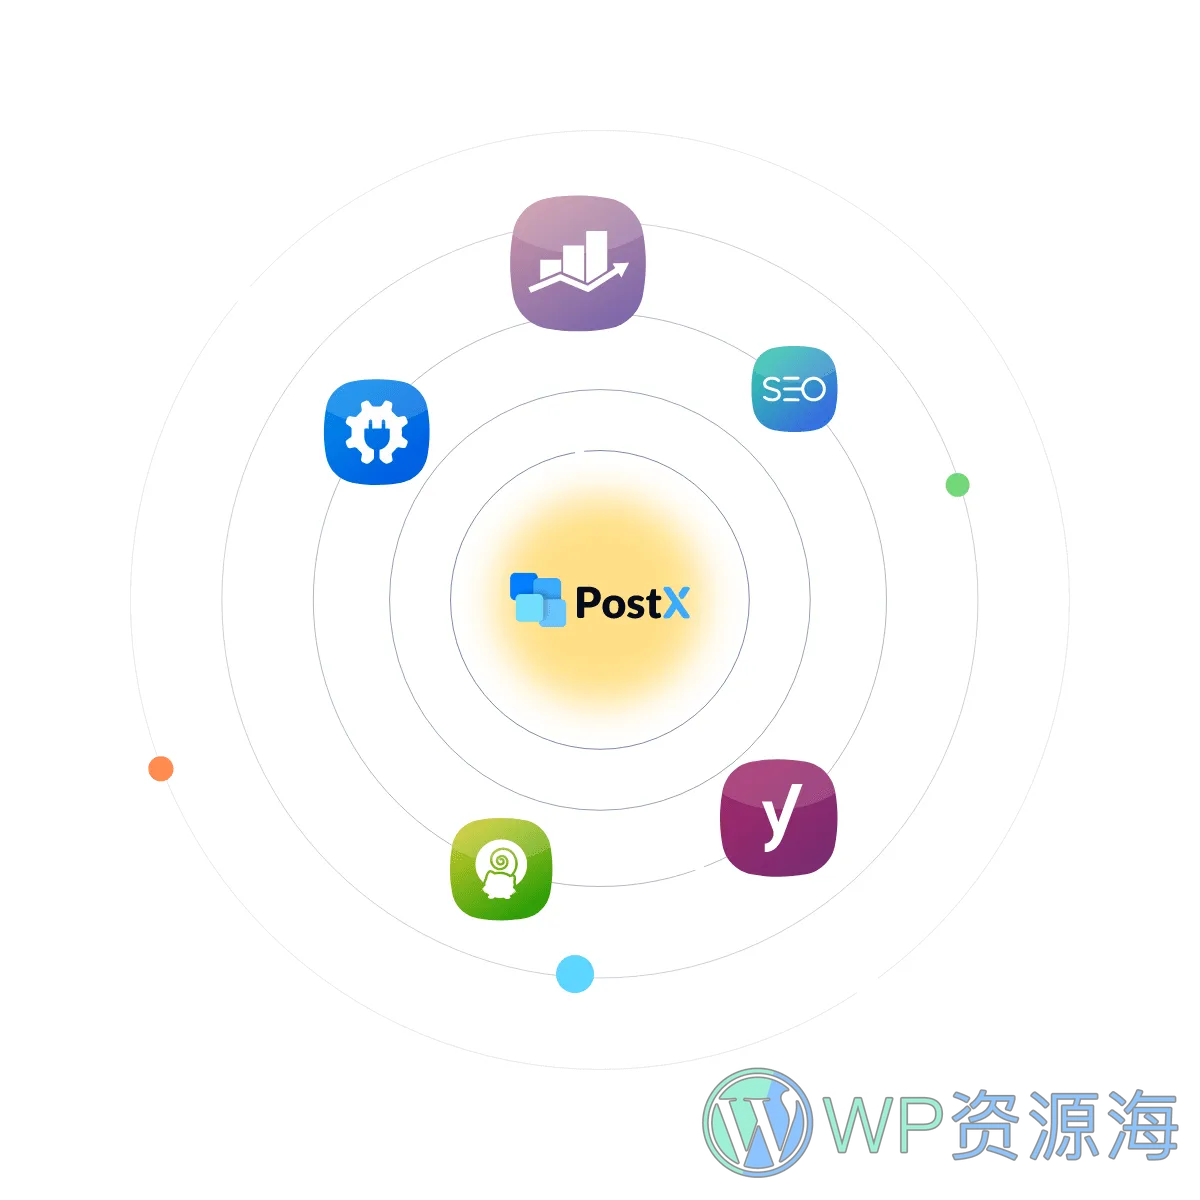 PostX Pro v1.6.5 排名第一的古腾堡文章列表区块插件插图25-WordPress资源海